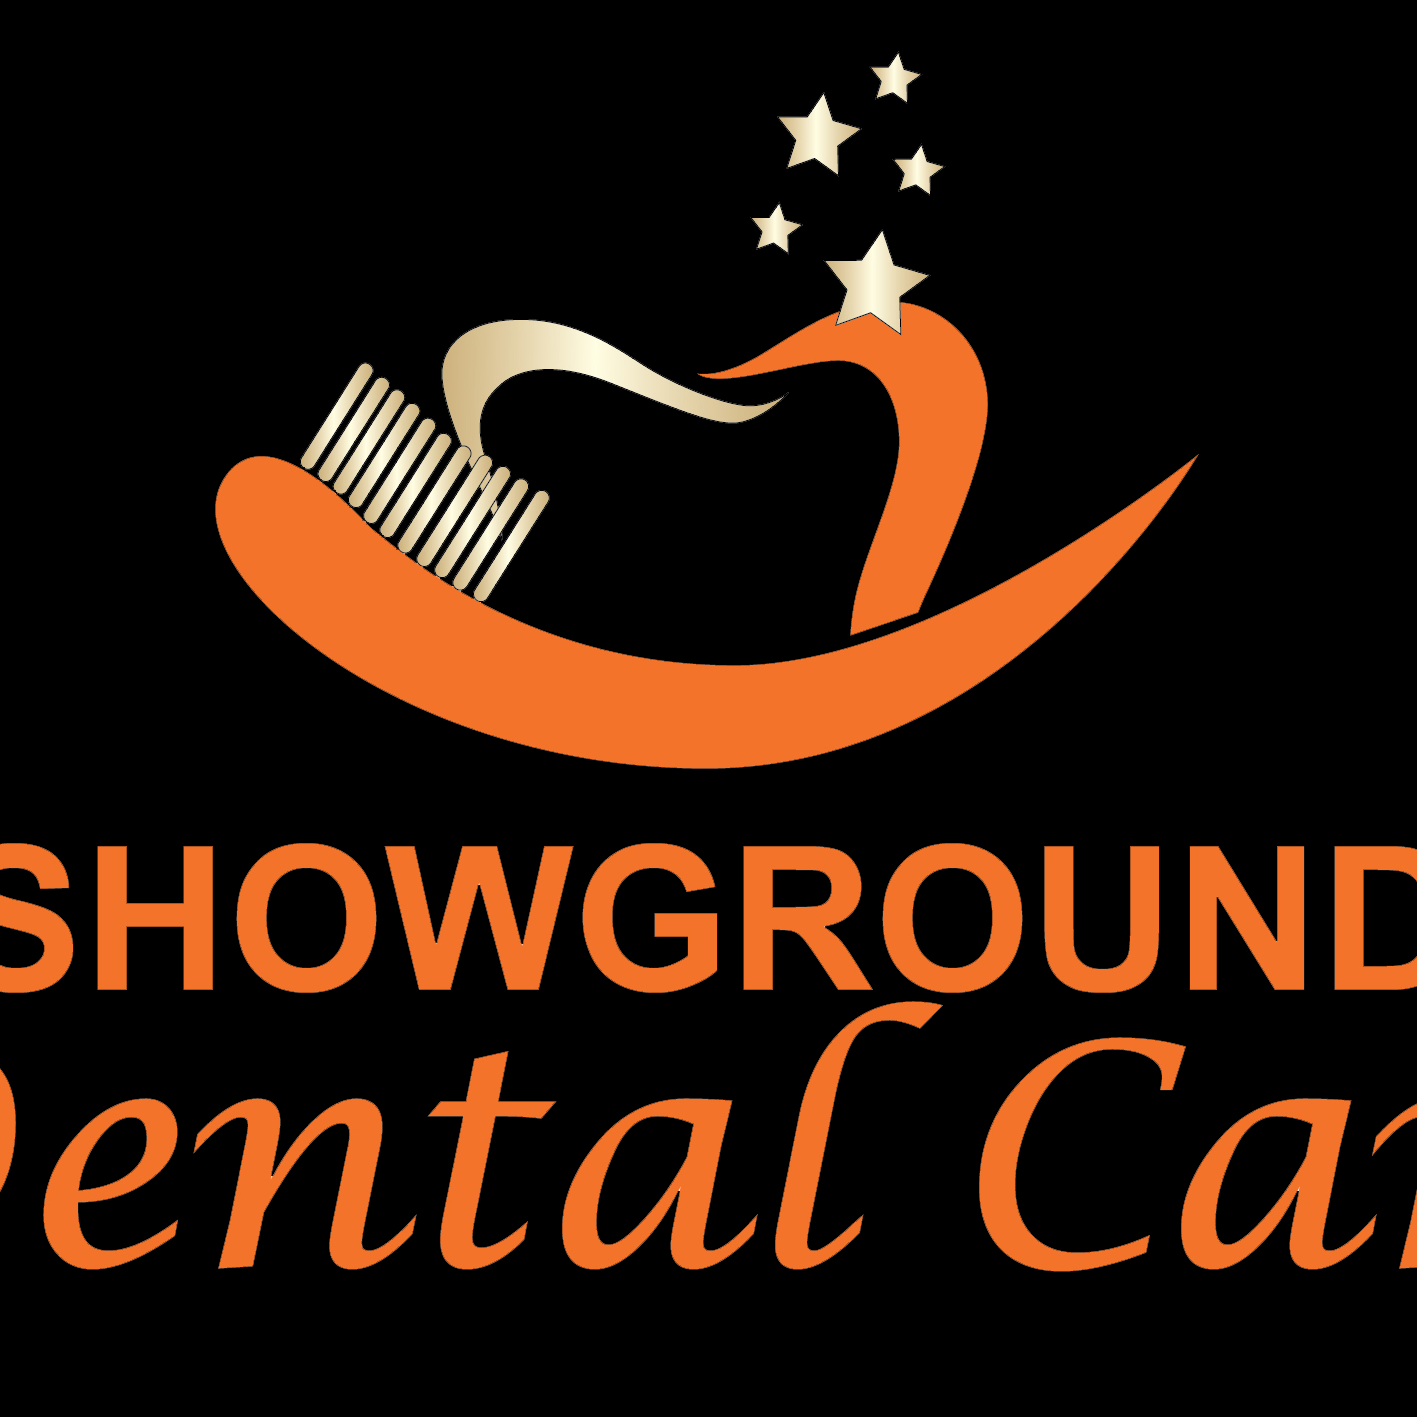 Showground Dental Care